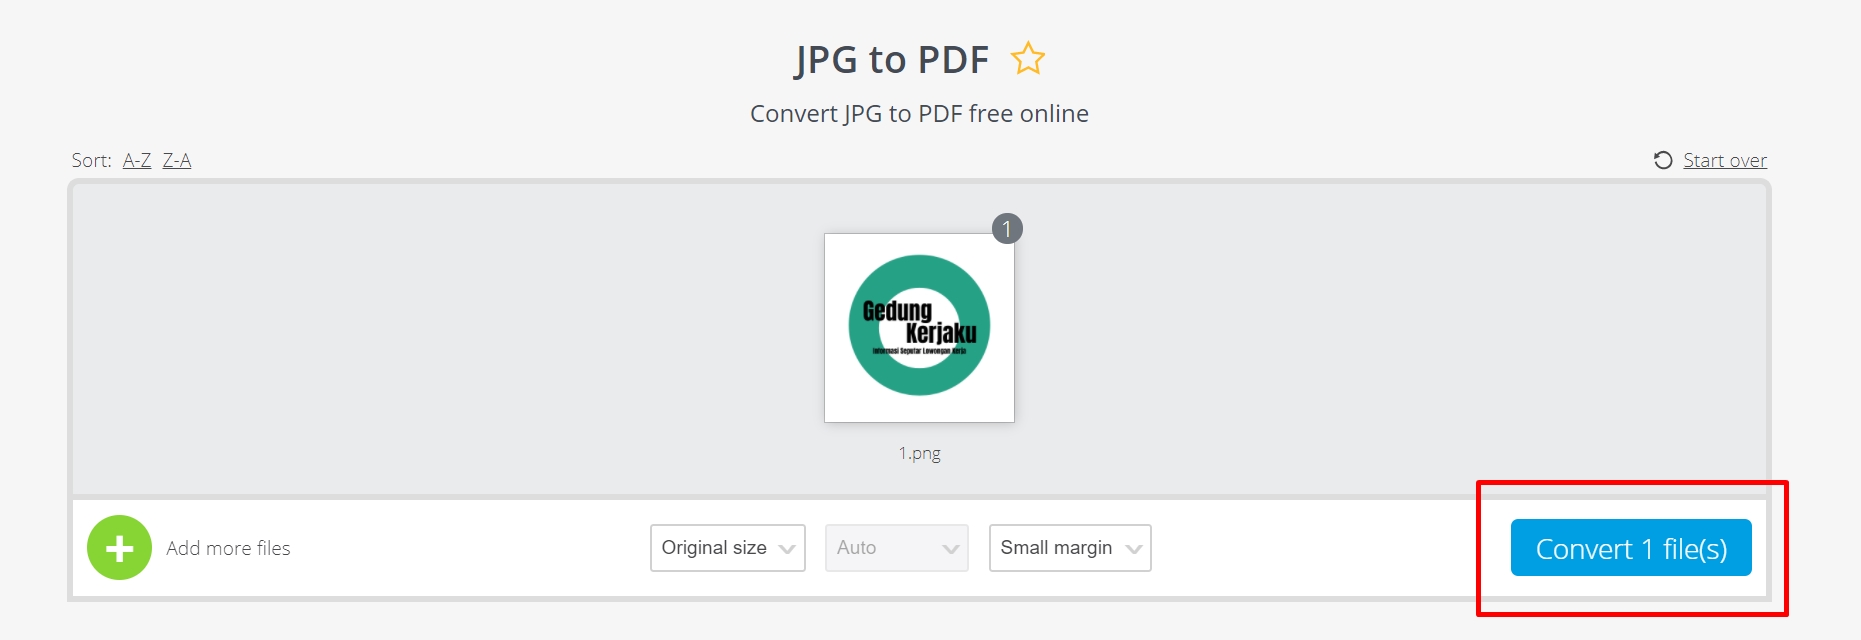 Cara paling simple mengubah file .Jpg atau .Docx ke PDF